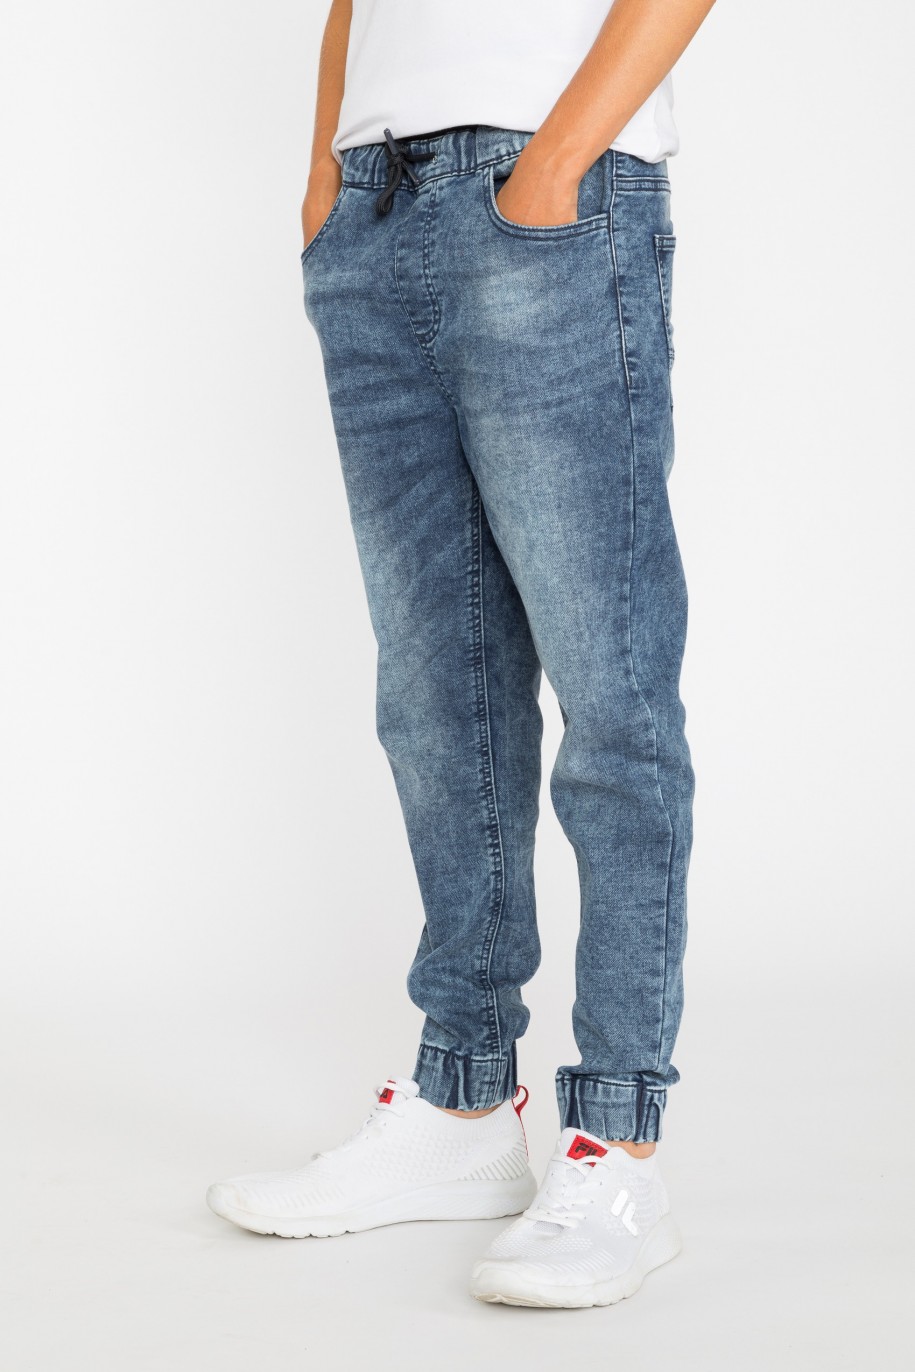 Granatowe jeansowe joggery dla chłopaka - 29326